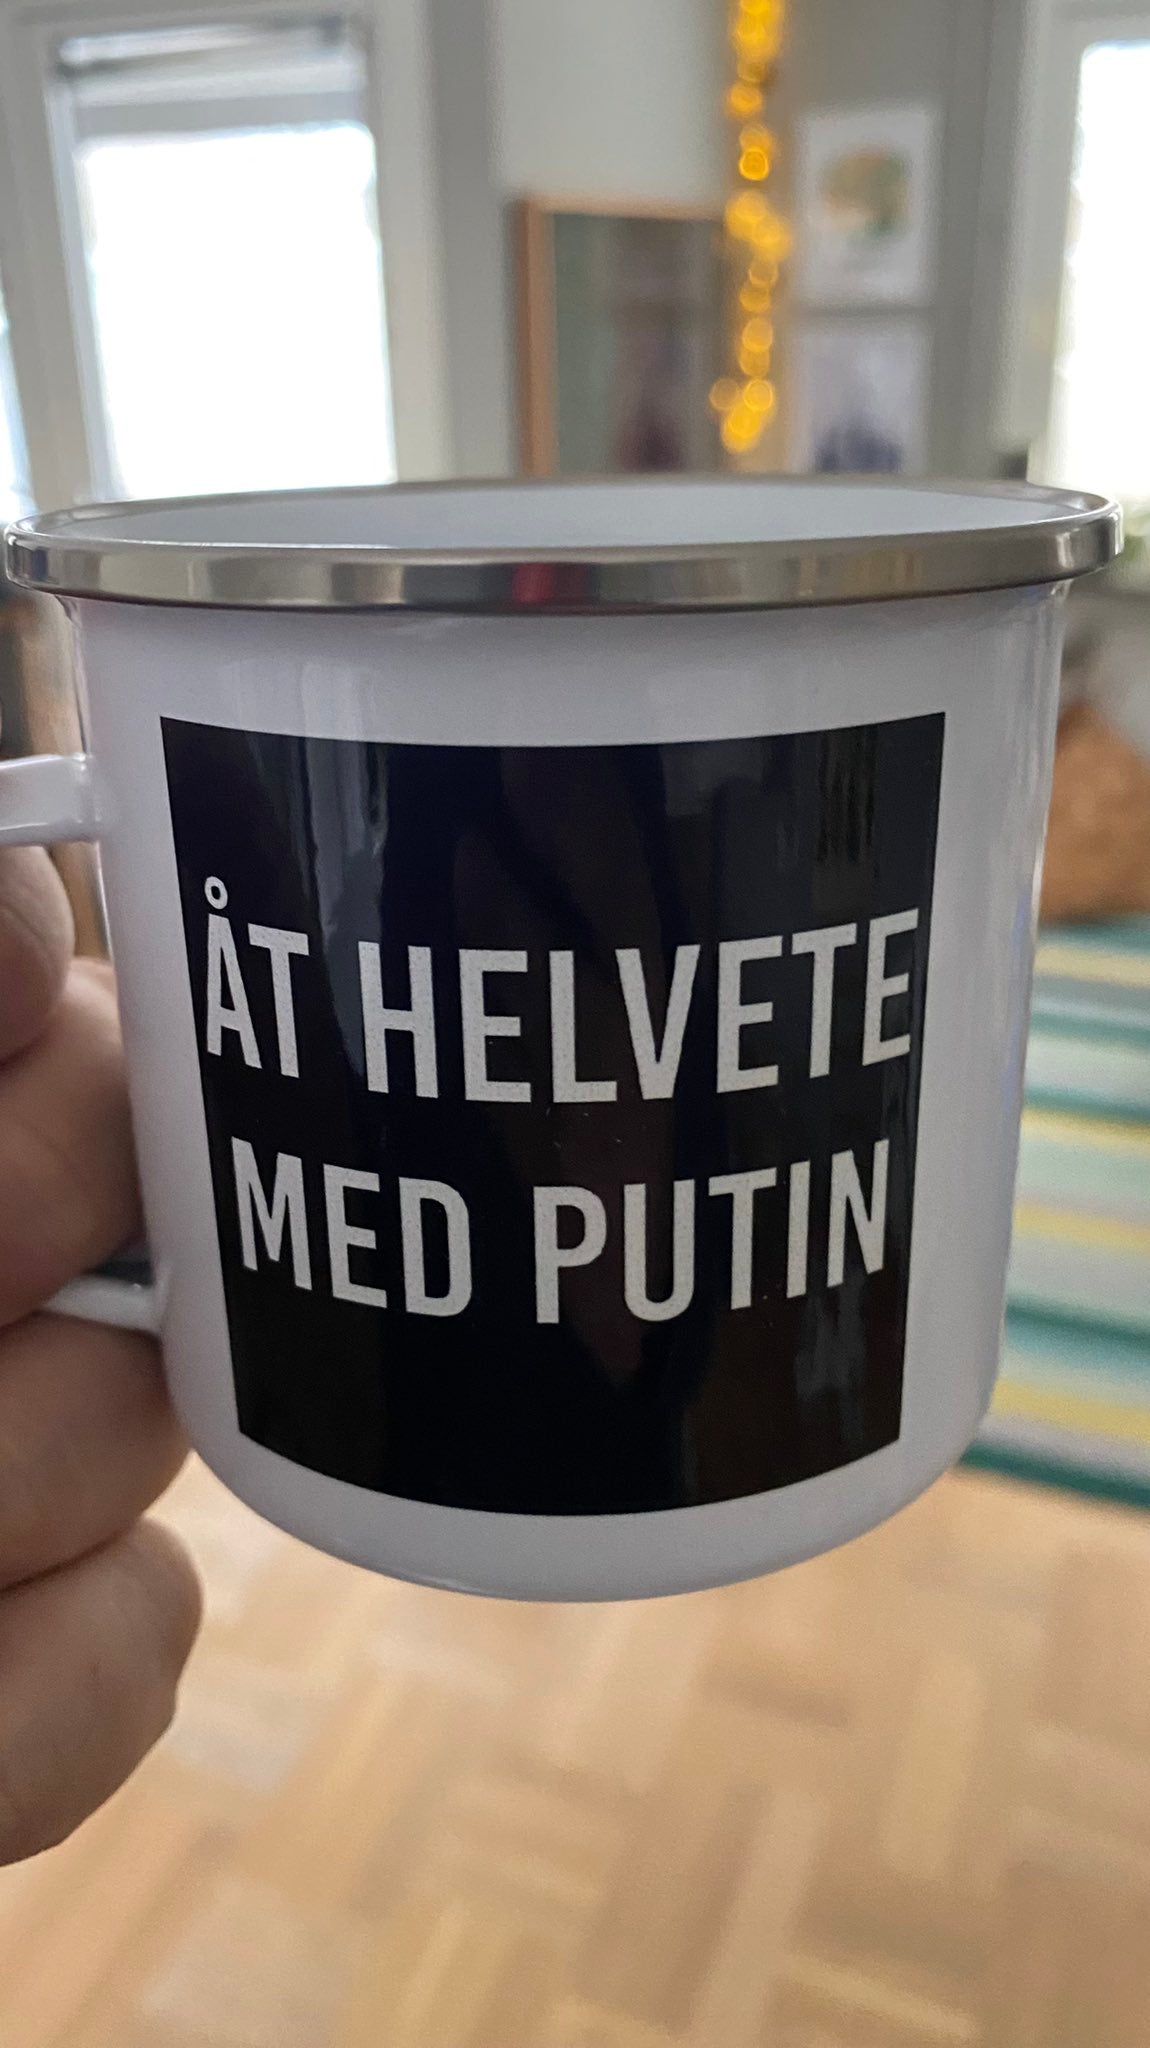 Åt helvete med Putin (emaljmugg-edition)